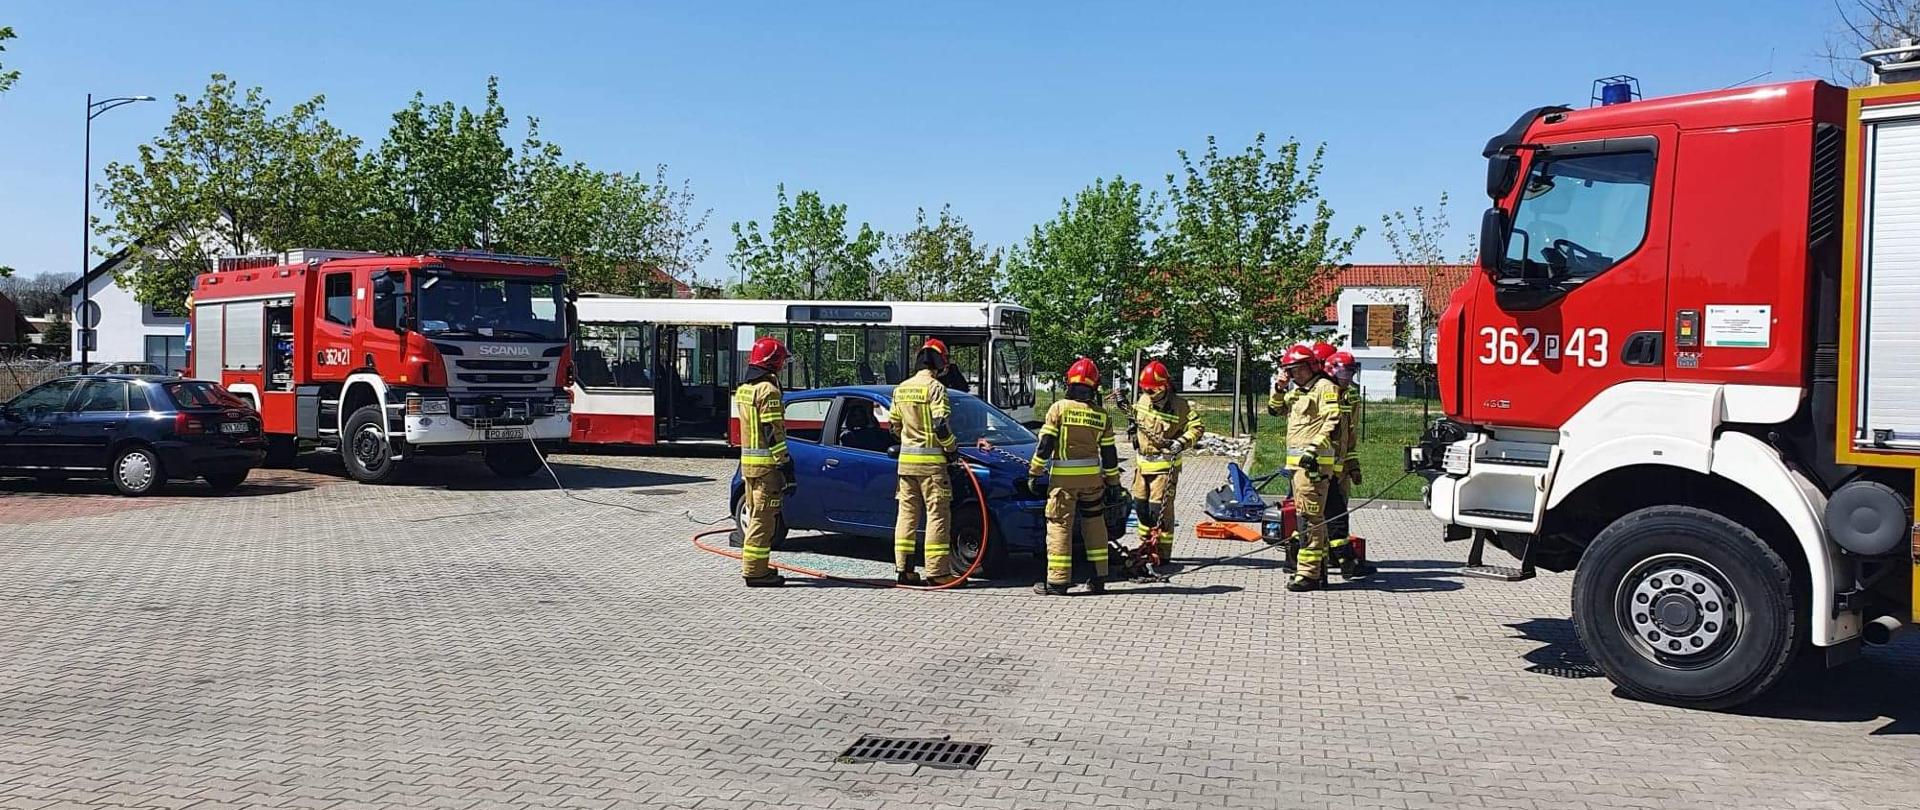 Zdjęcie przedstawia strażaków podczas ćwiczeń z zakresu ratownictwa technicznego. Strażacy przy pomocy urządzeń hydraulicznych oraz samochodów strażackich wykonywali dostęp do osoby poszkodowanej